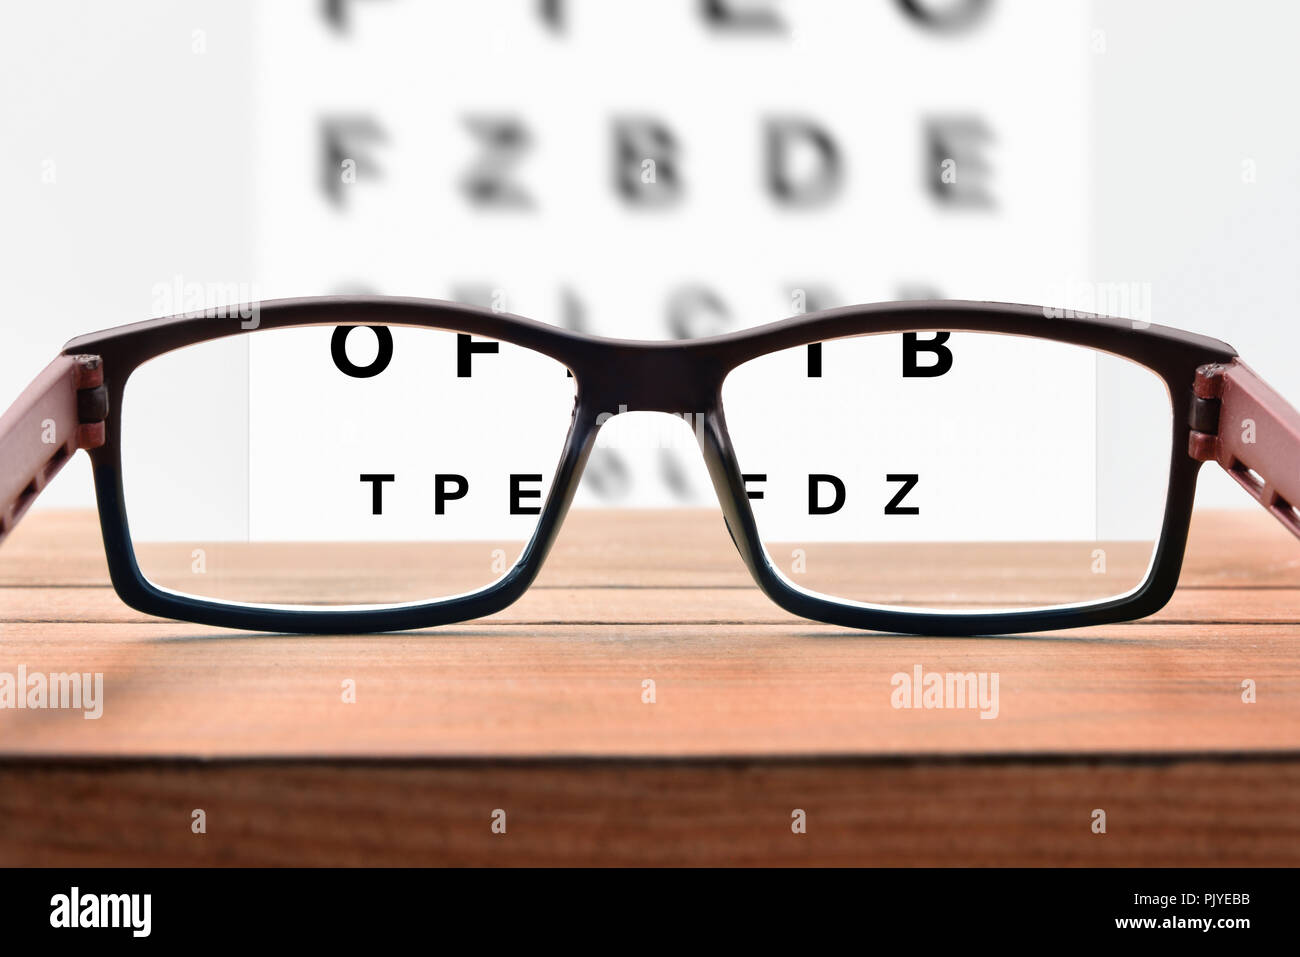 Concetto di revisione degli occhi con foglio con lettere e occhiali da vista. Vista frontale. Composizione orizzontale Foto Stock